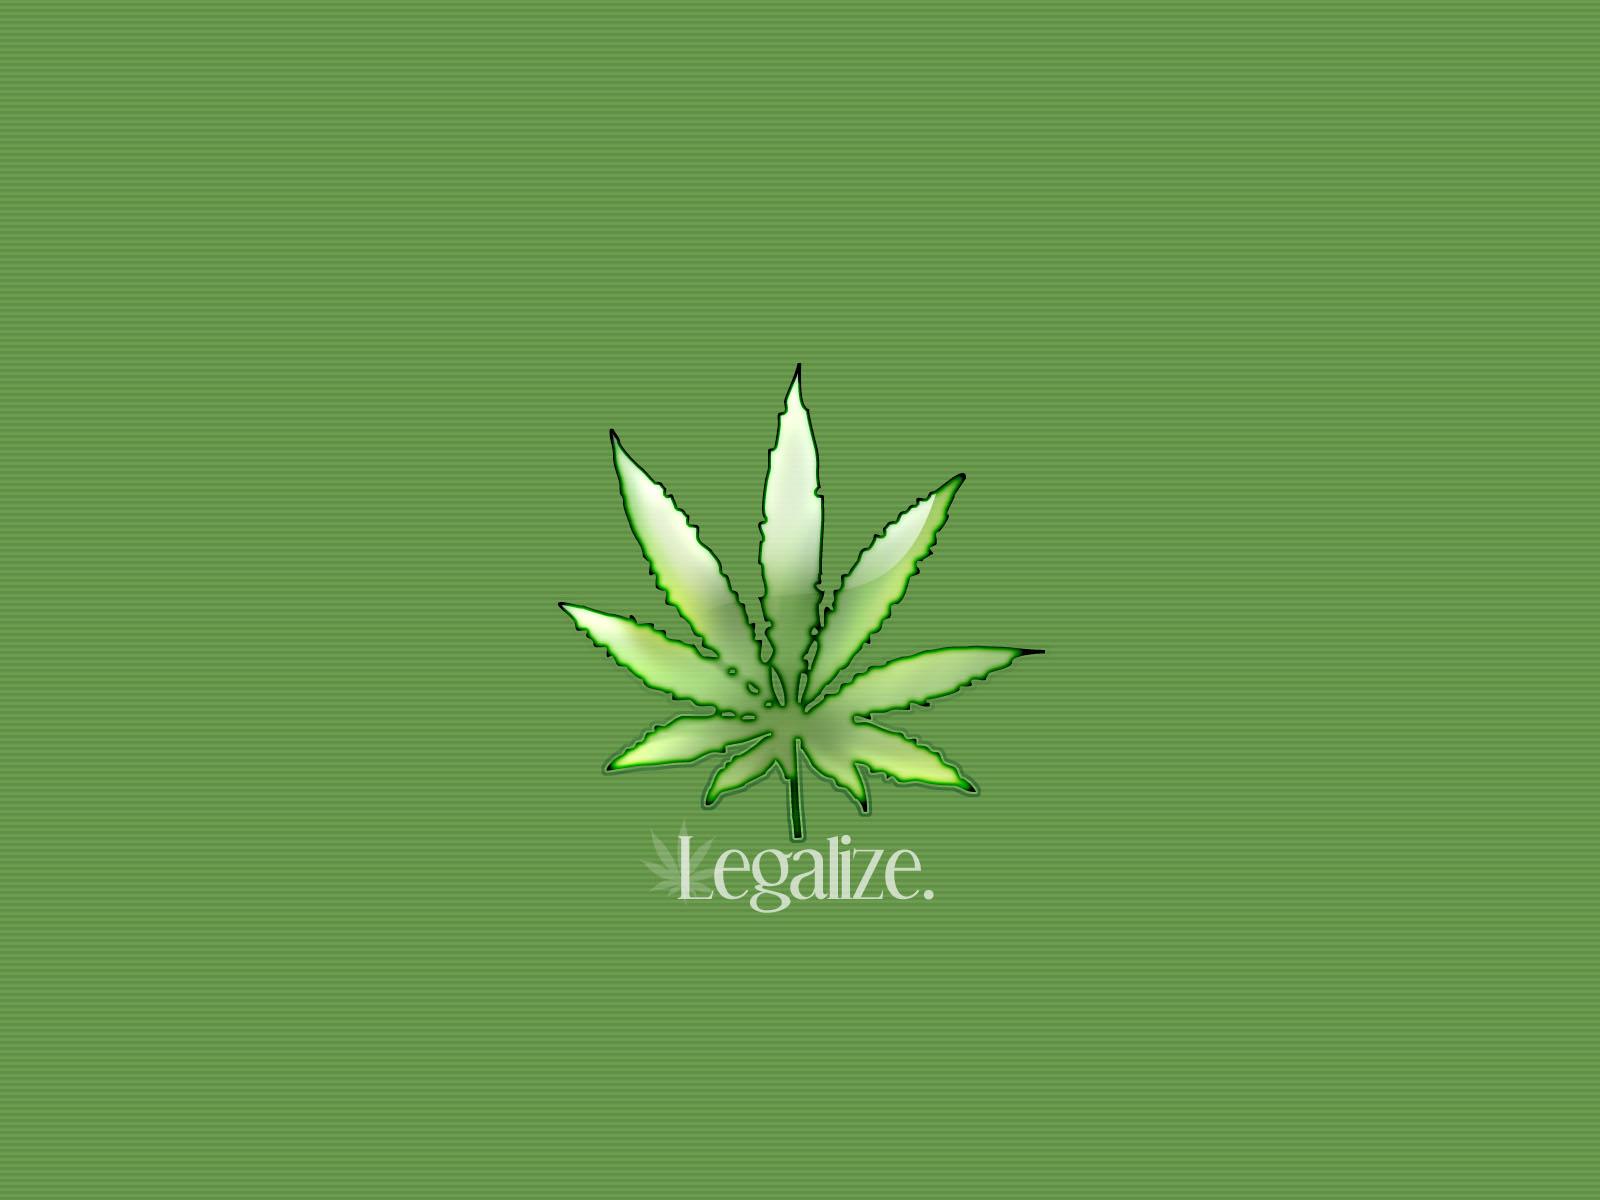 Marijuana Artistic at 1024 x 1024 iPad size wallpapers HD quality